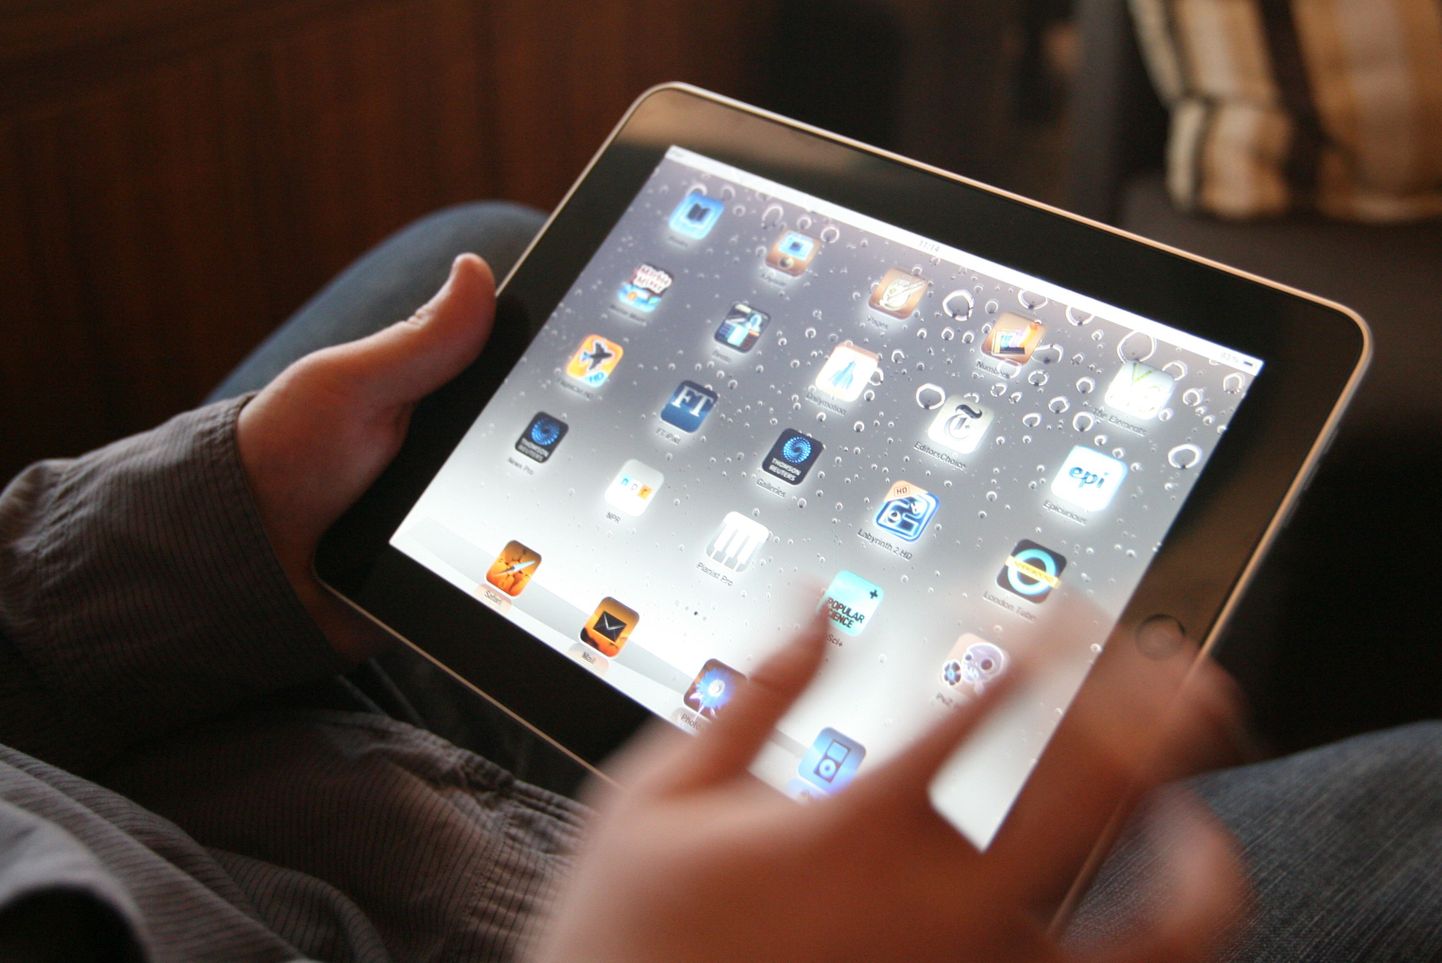 Apple iPad oli näiteks üks seade, mida seda osta soovinu kätte ei saanud.